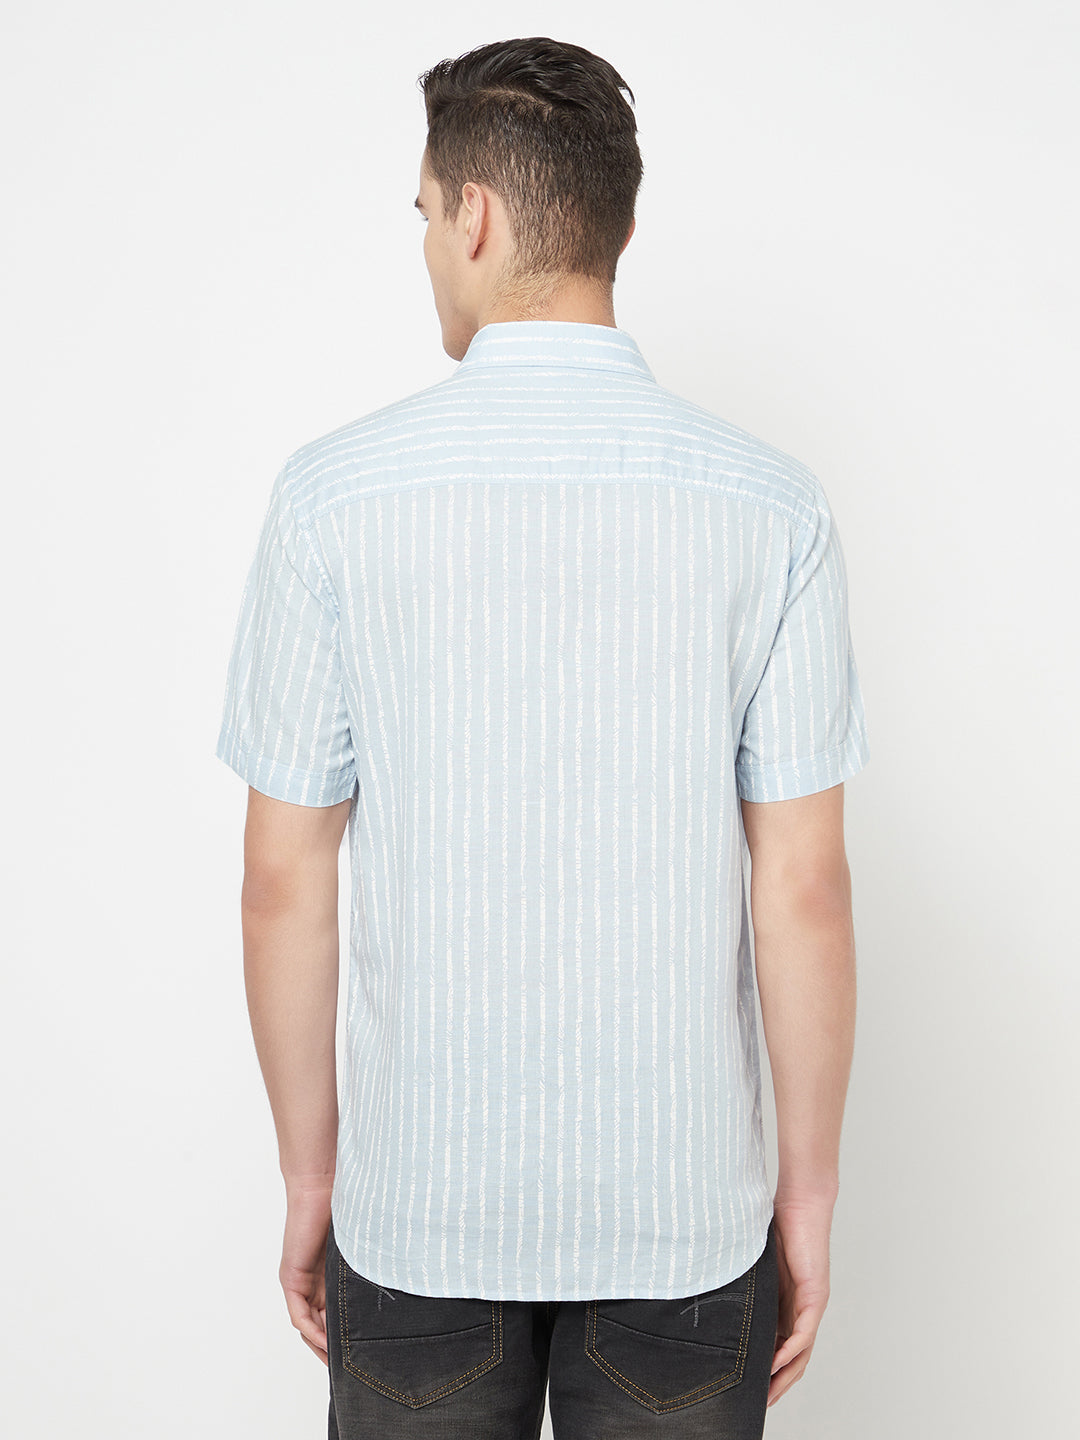 Blue Striped Linen Shirt - Men Shirts